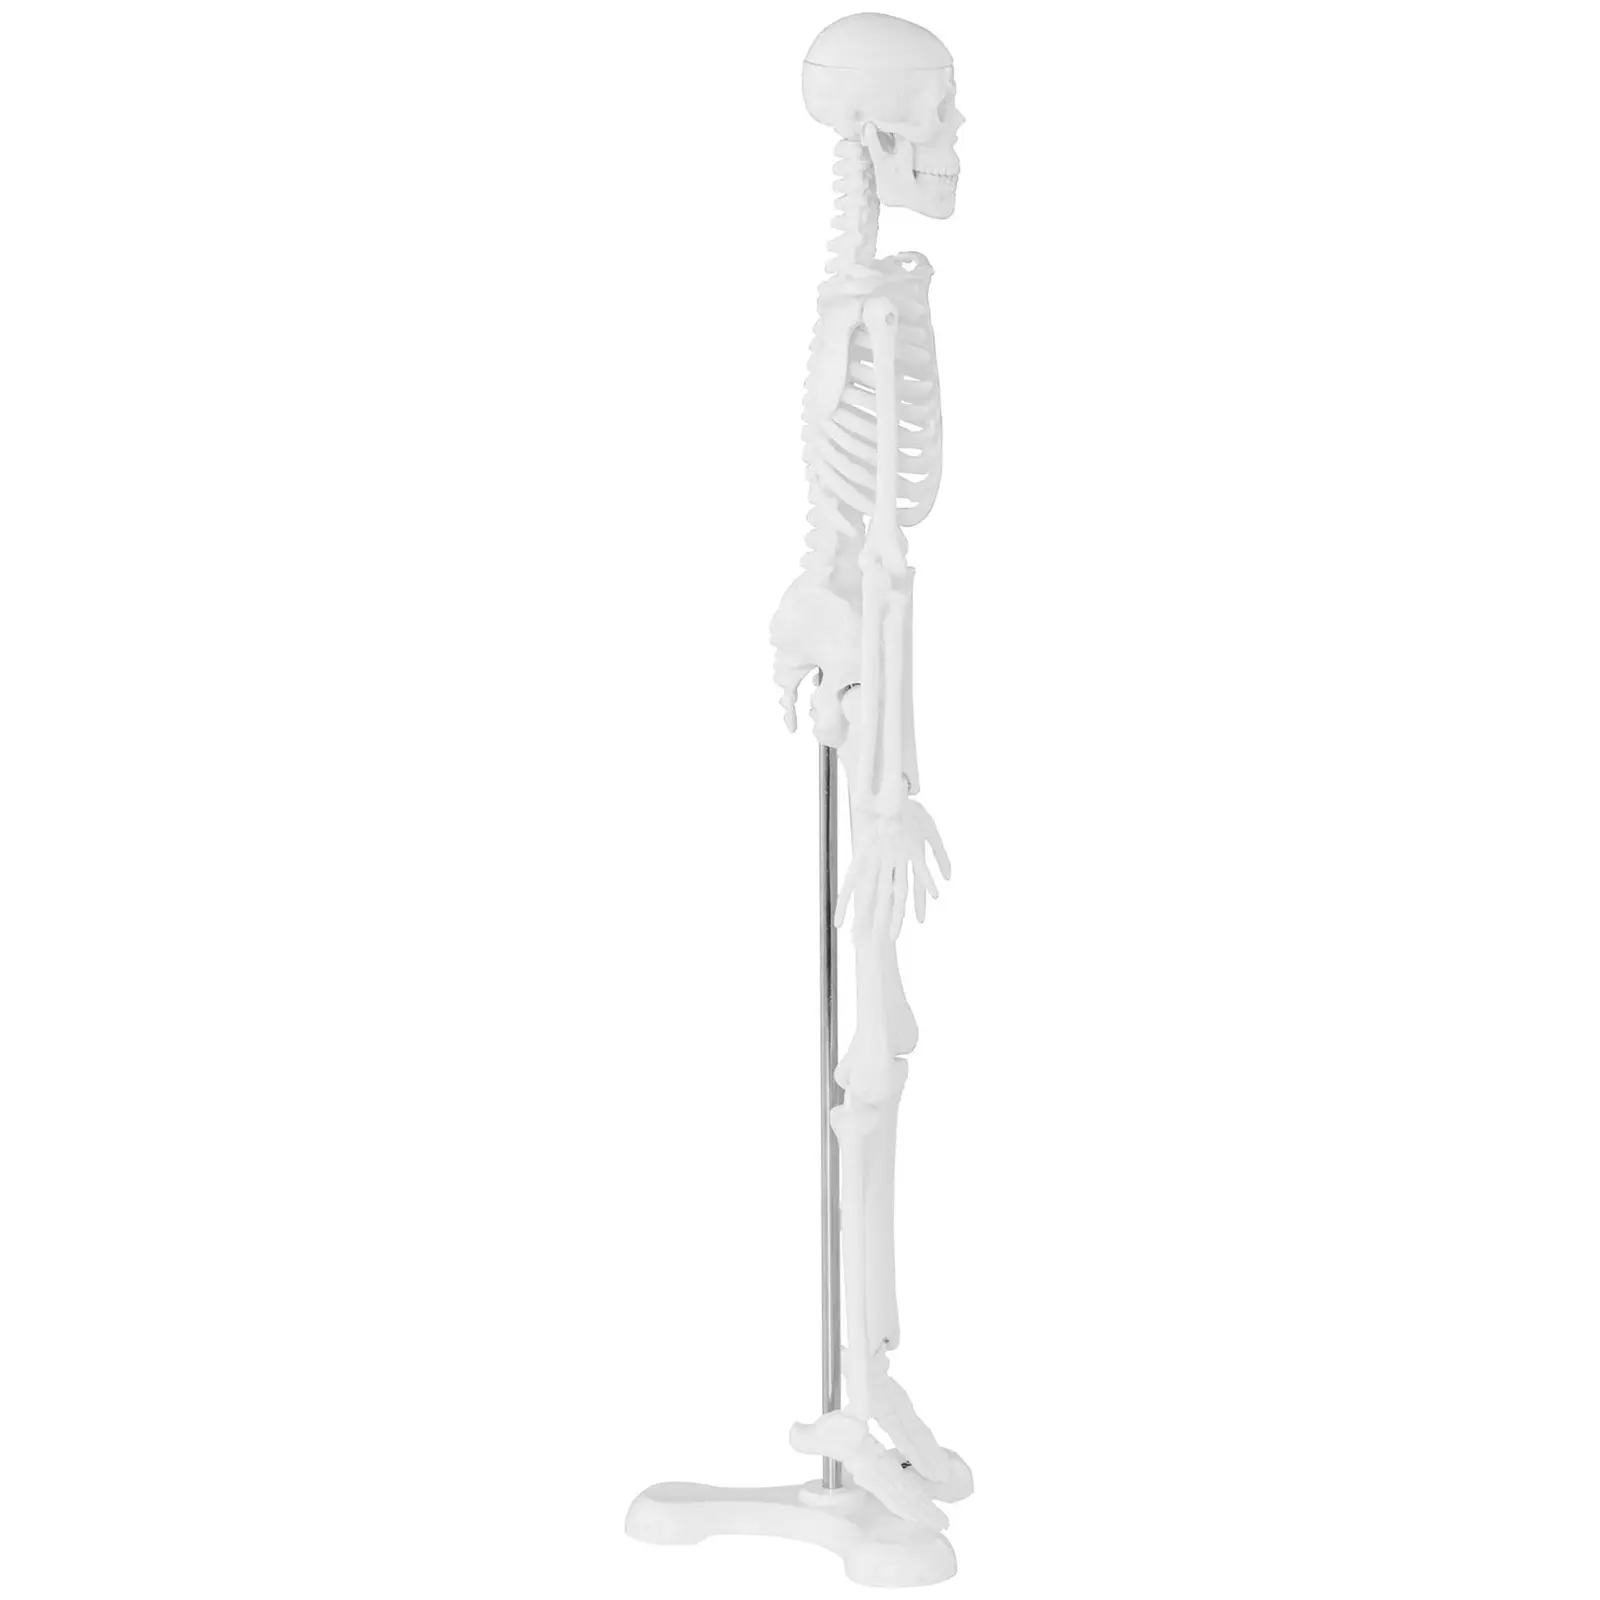 Anatominen malli - luuranko - 45 cm - mittasuhde 1:4